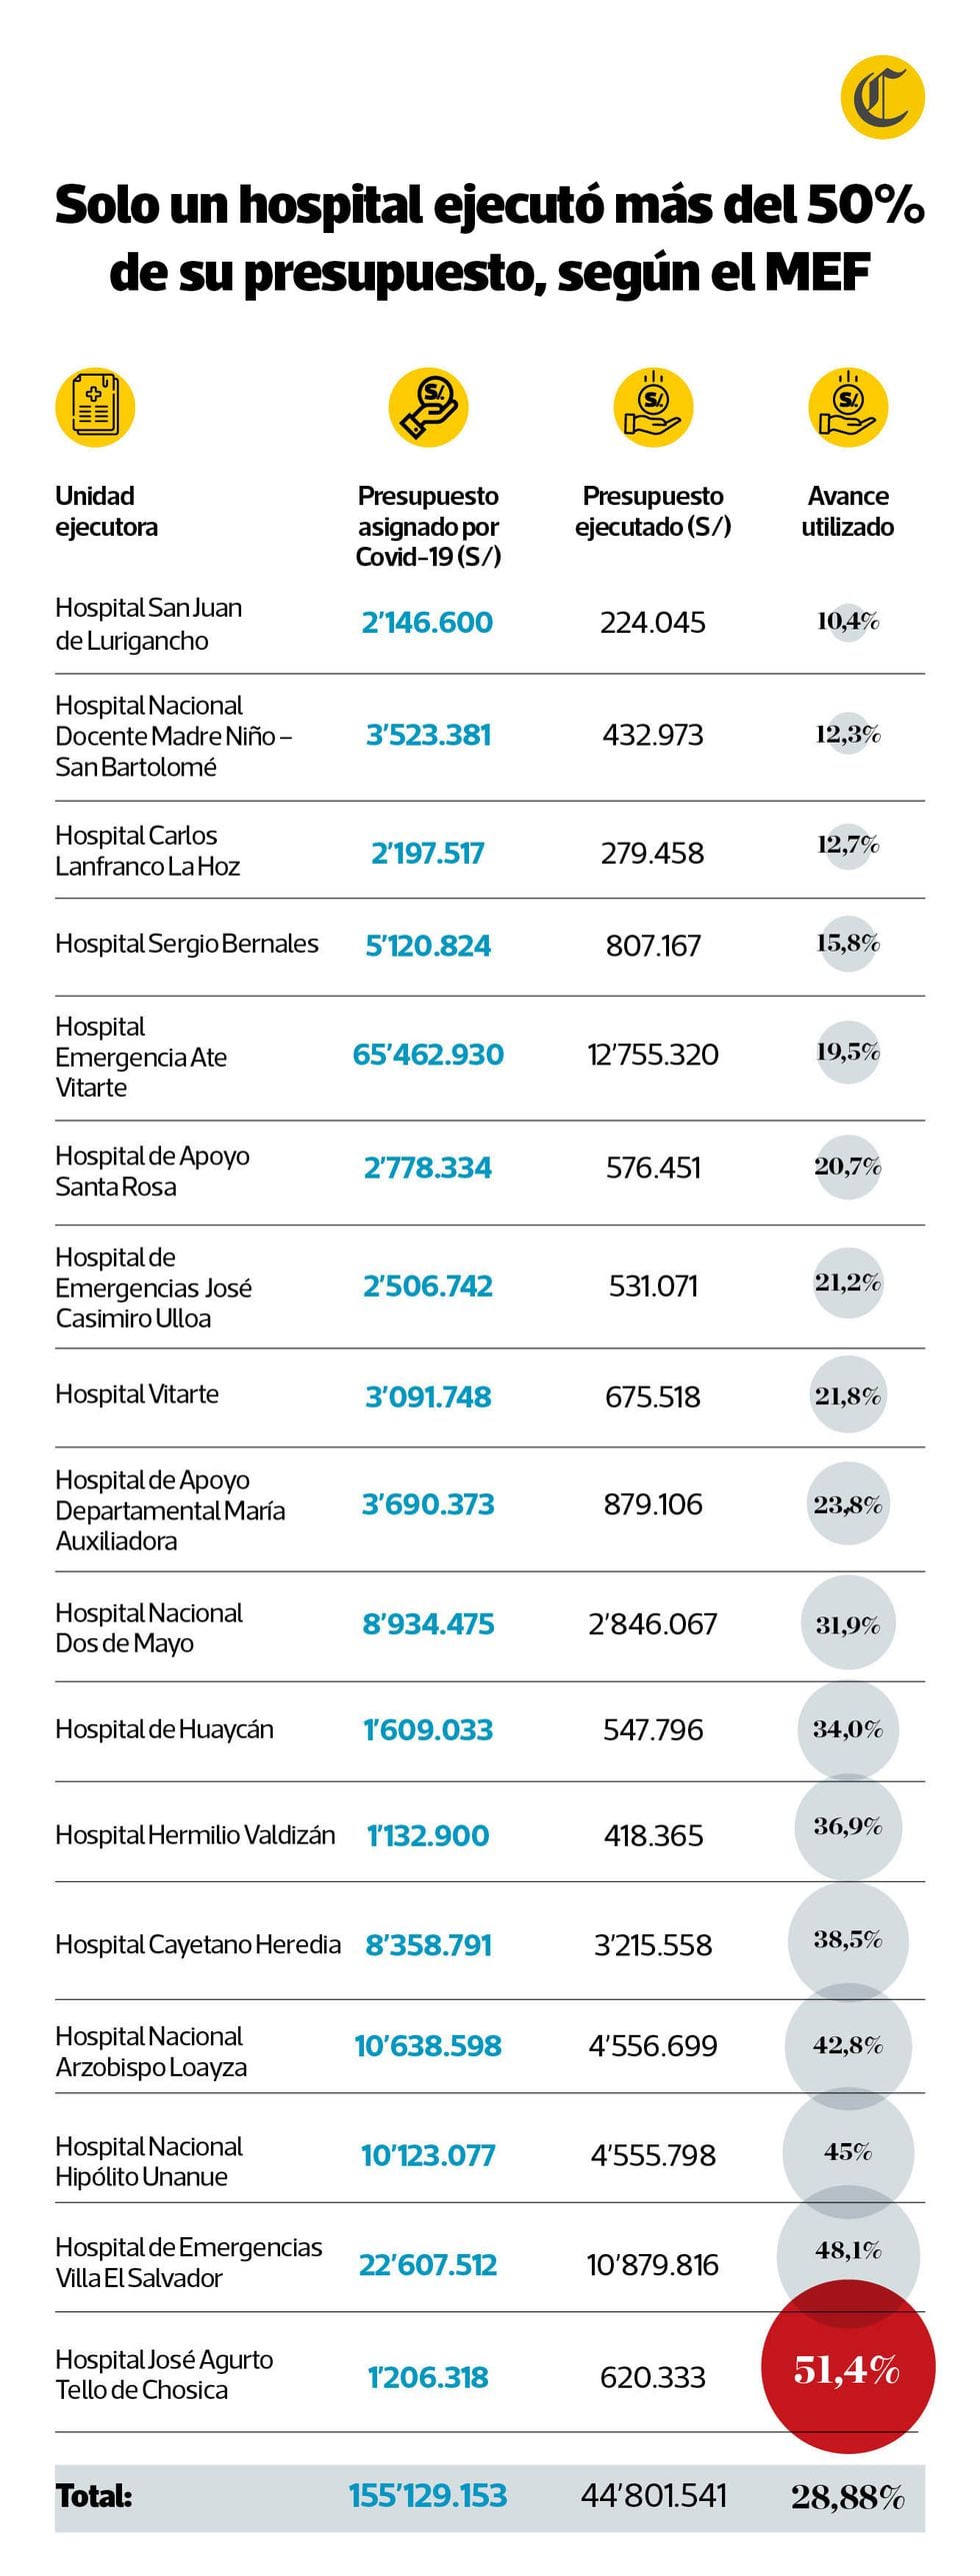 Hasta el 4 de junio del 2020, solo uno de los 17 hospitales a cargo del Minsa ejecutó más del 50% del presupuesto que se le asignó para combatir el Covid-19. (Infografía: El Comercio)